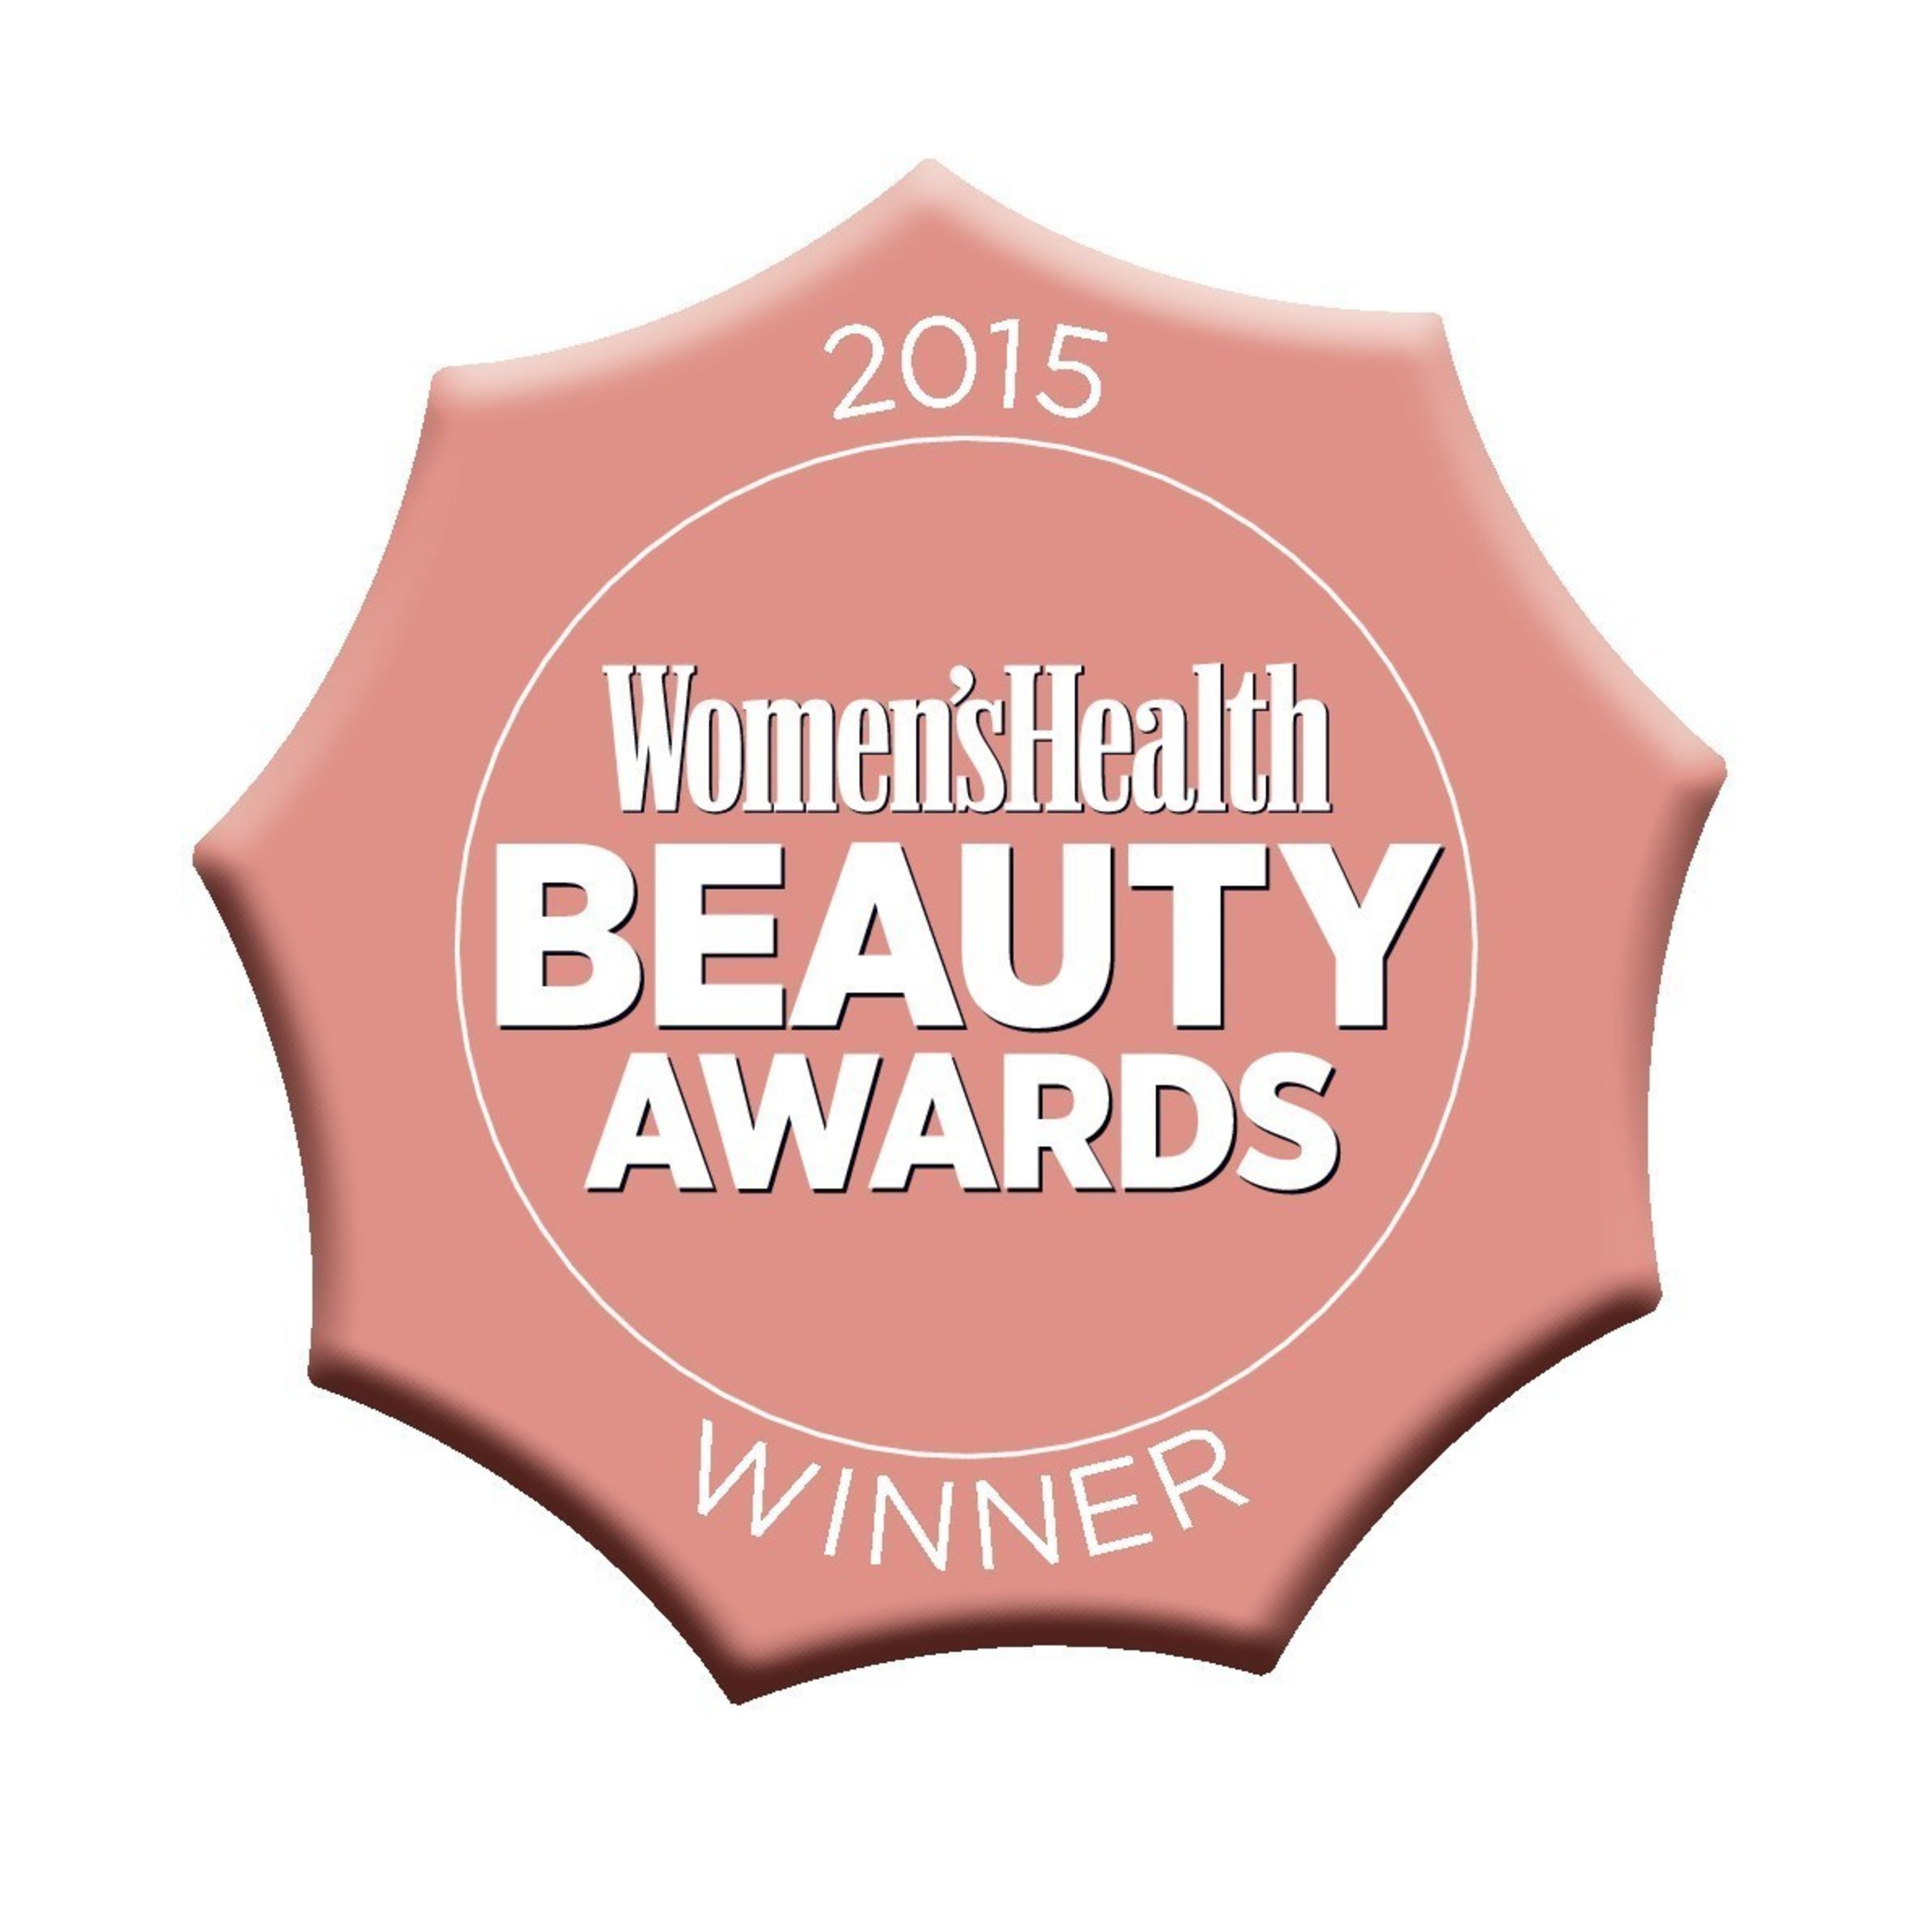 SCHWARZKOPF ULTIME WINS 2015 WOMEN'S HEALTH BEAUTY AWARD